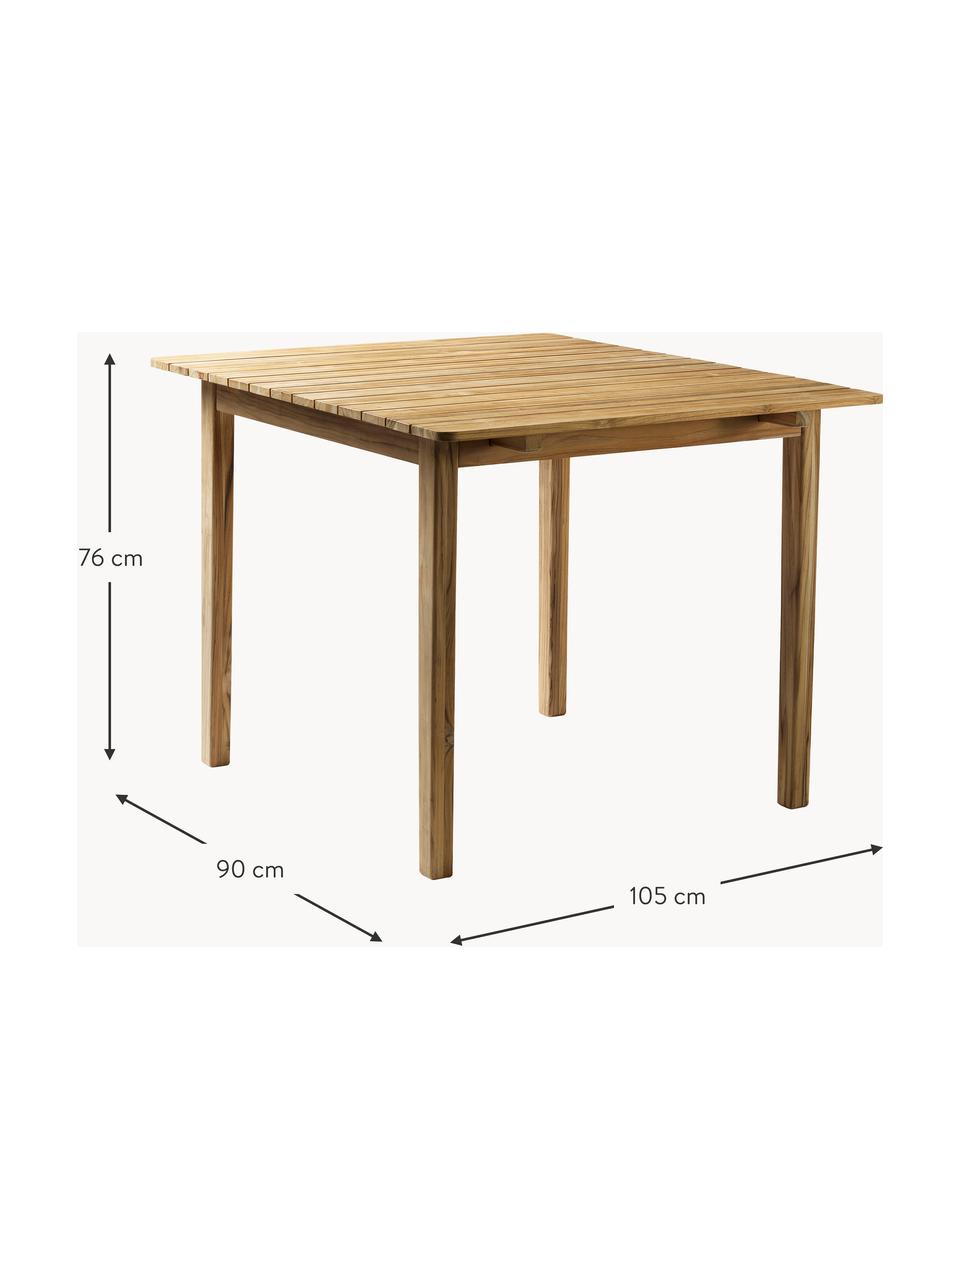 Mesa para exteriores de madera de teca Sammen, tamaños diferentes, Madera de teca

Este producto está hecho de madera de origen sostenible y con certificación FSC®., Madera de teca, An 105 x F 90 cm